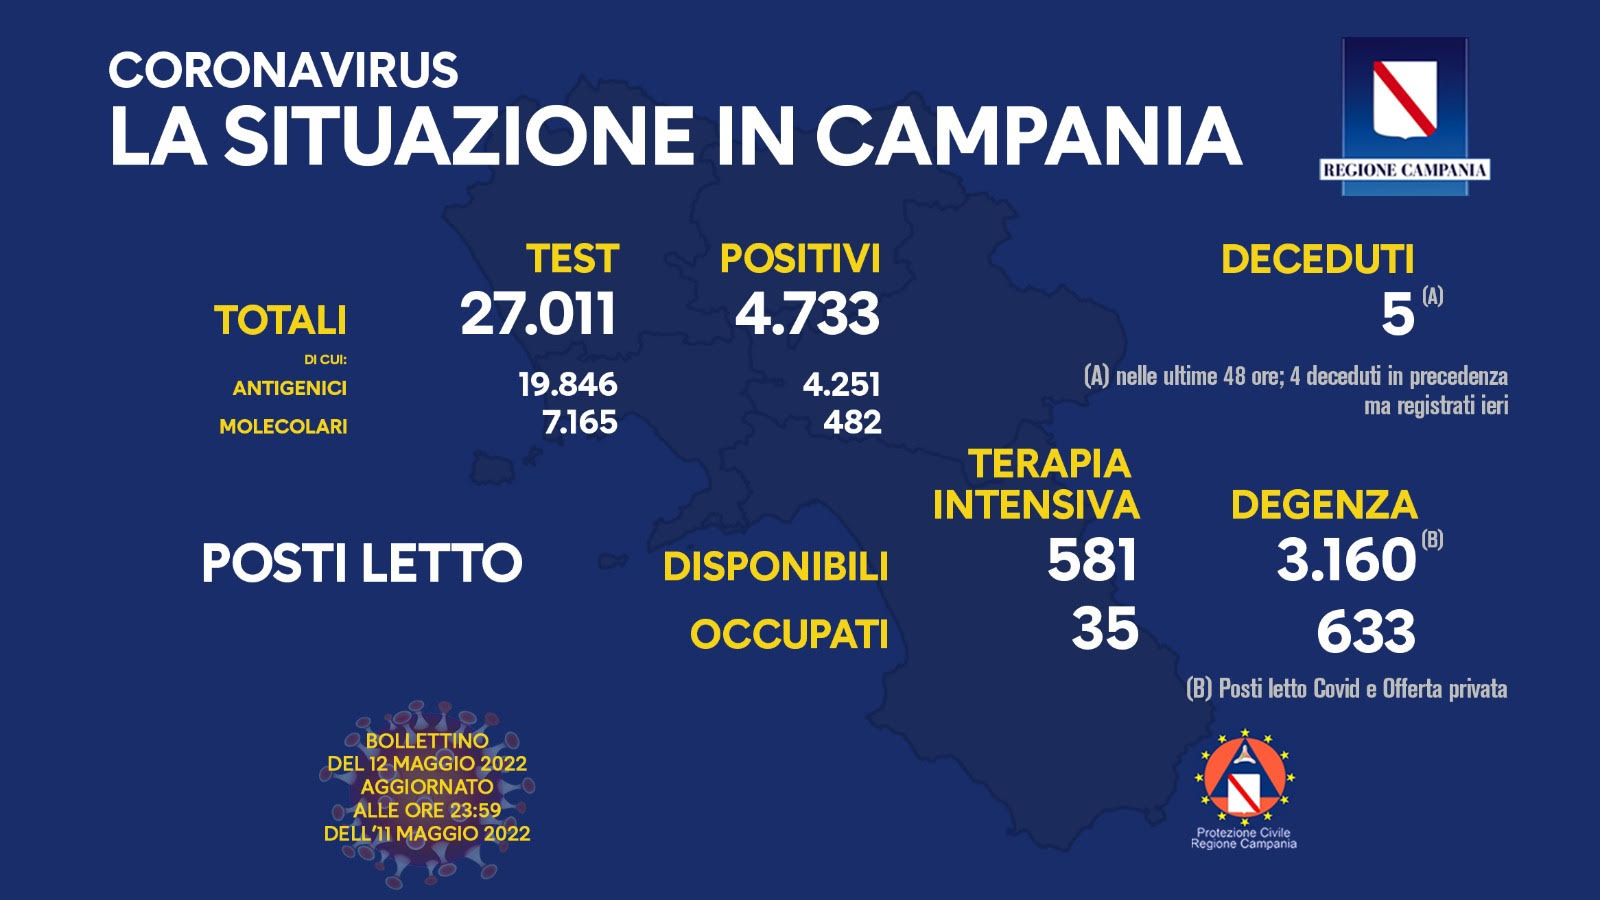 Covid 19 in Campania, bollettino 11 maggio: 4.733 positivi